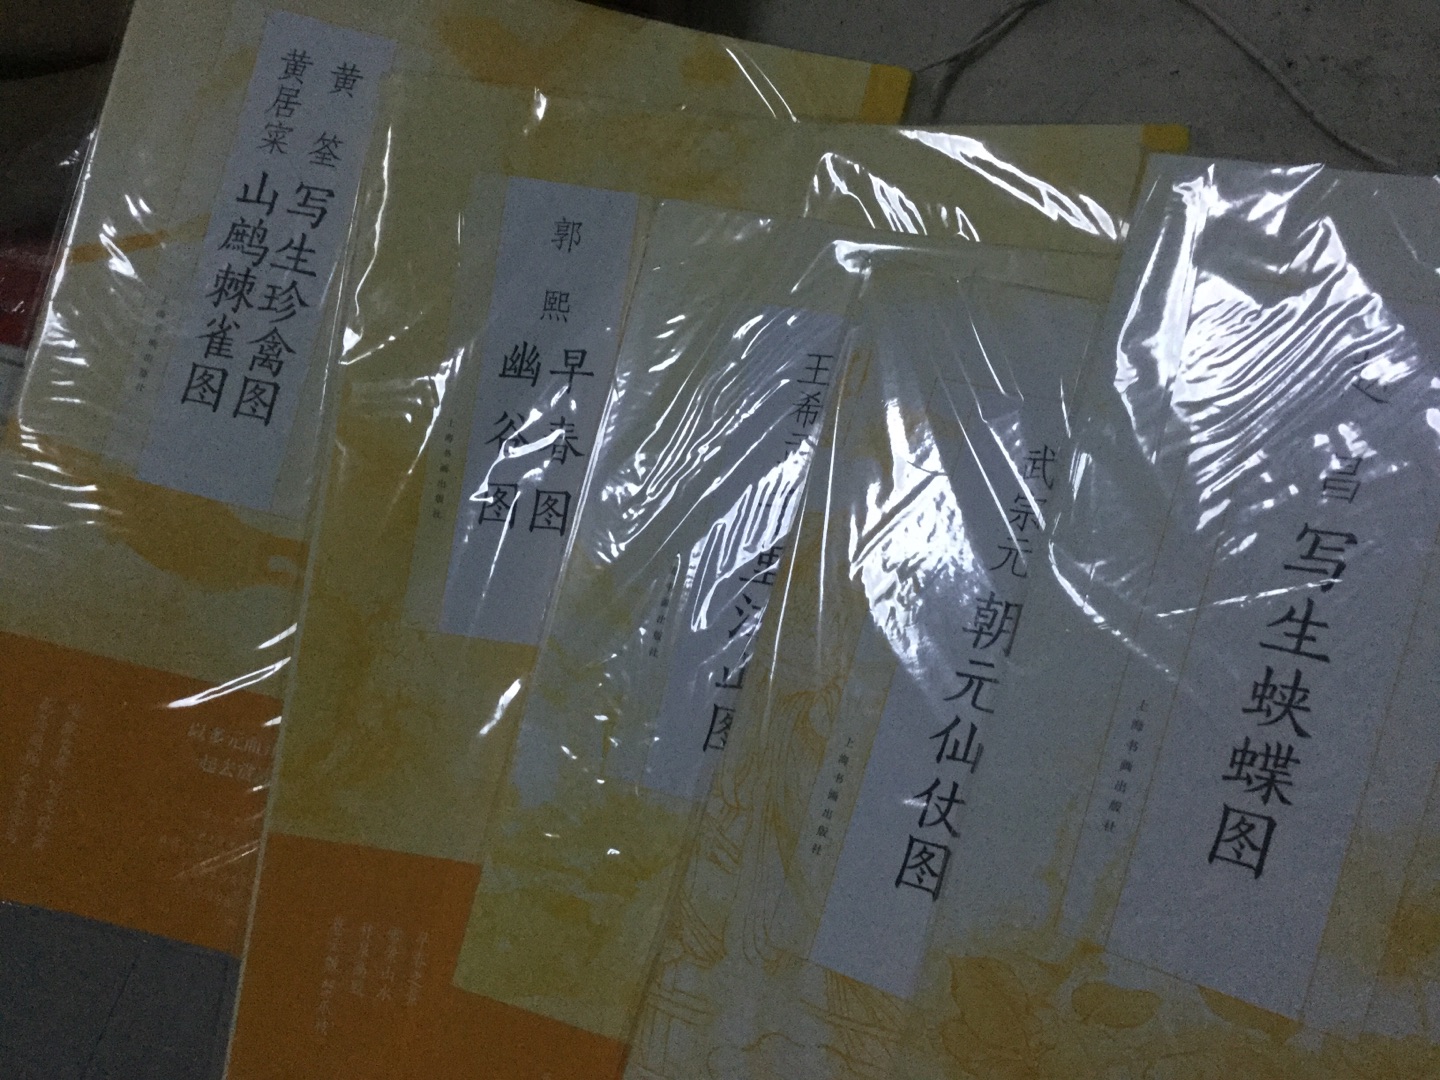 好书，比较喜欢买上海书画出版社的书，色正，印刷好。